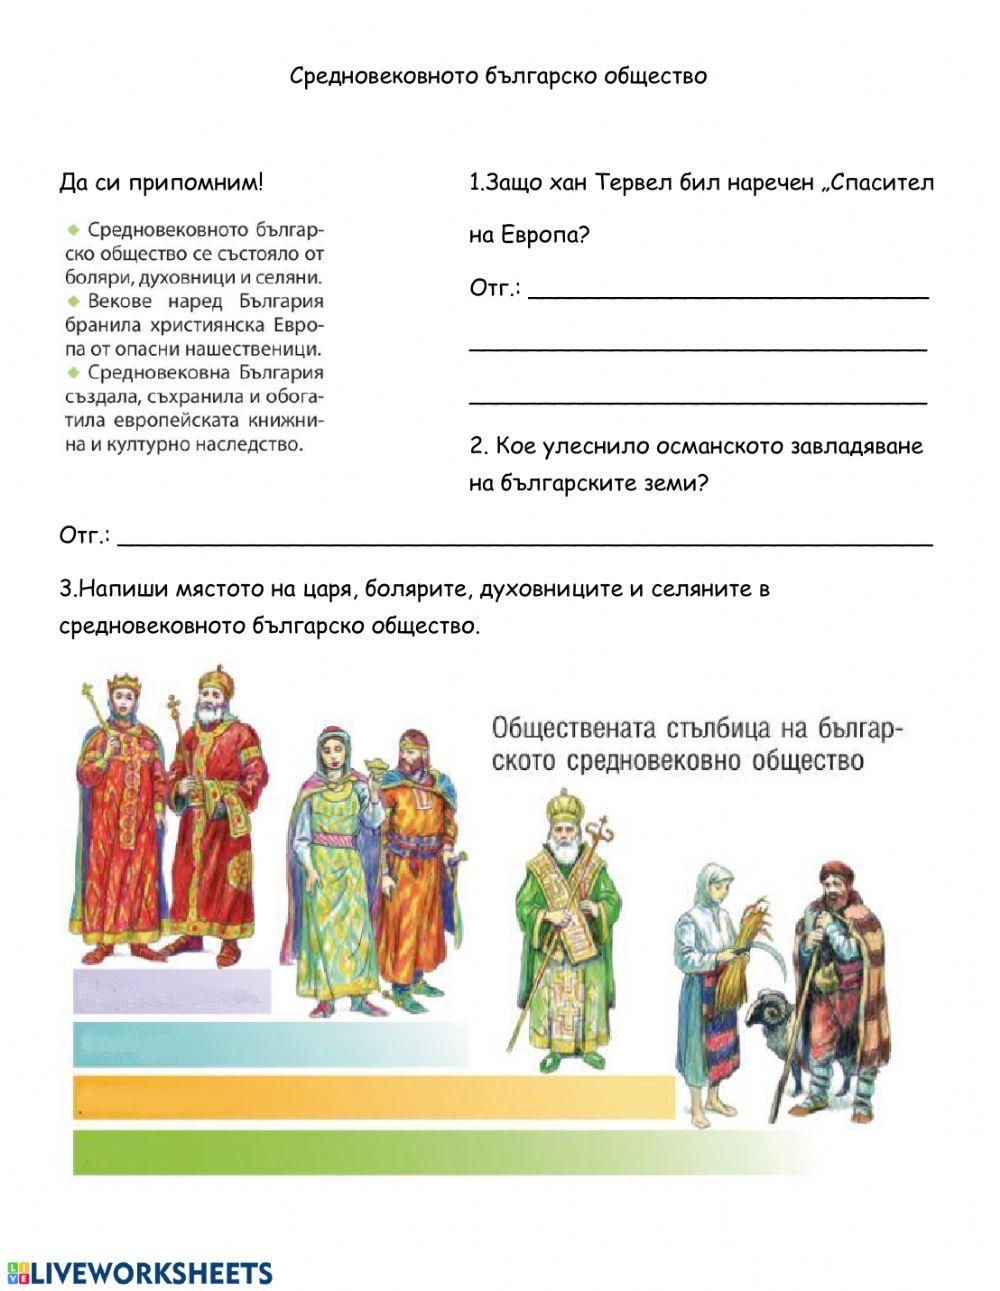 ЧО - Българското общество през Средновековието